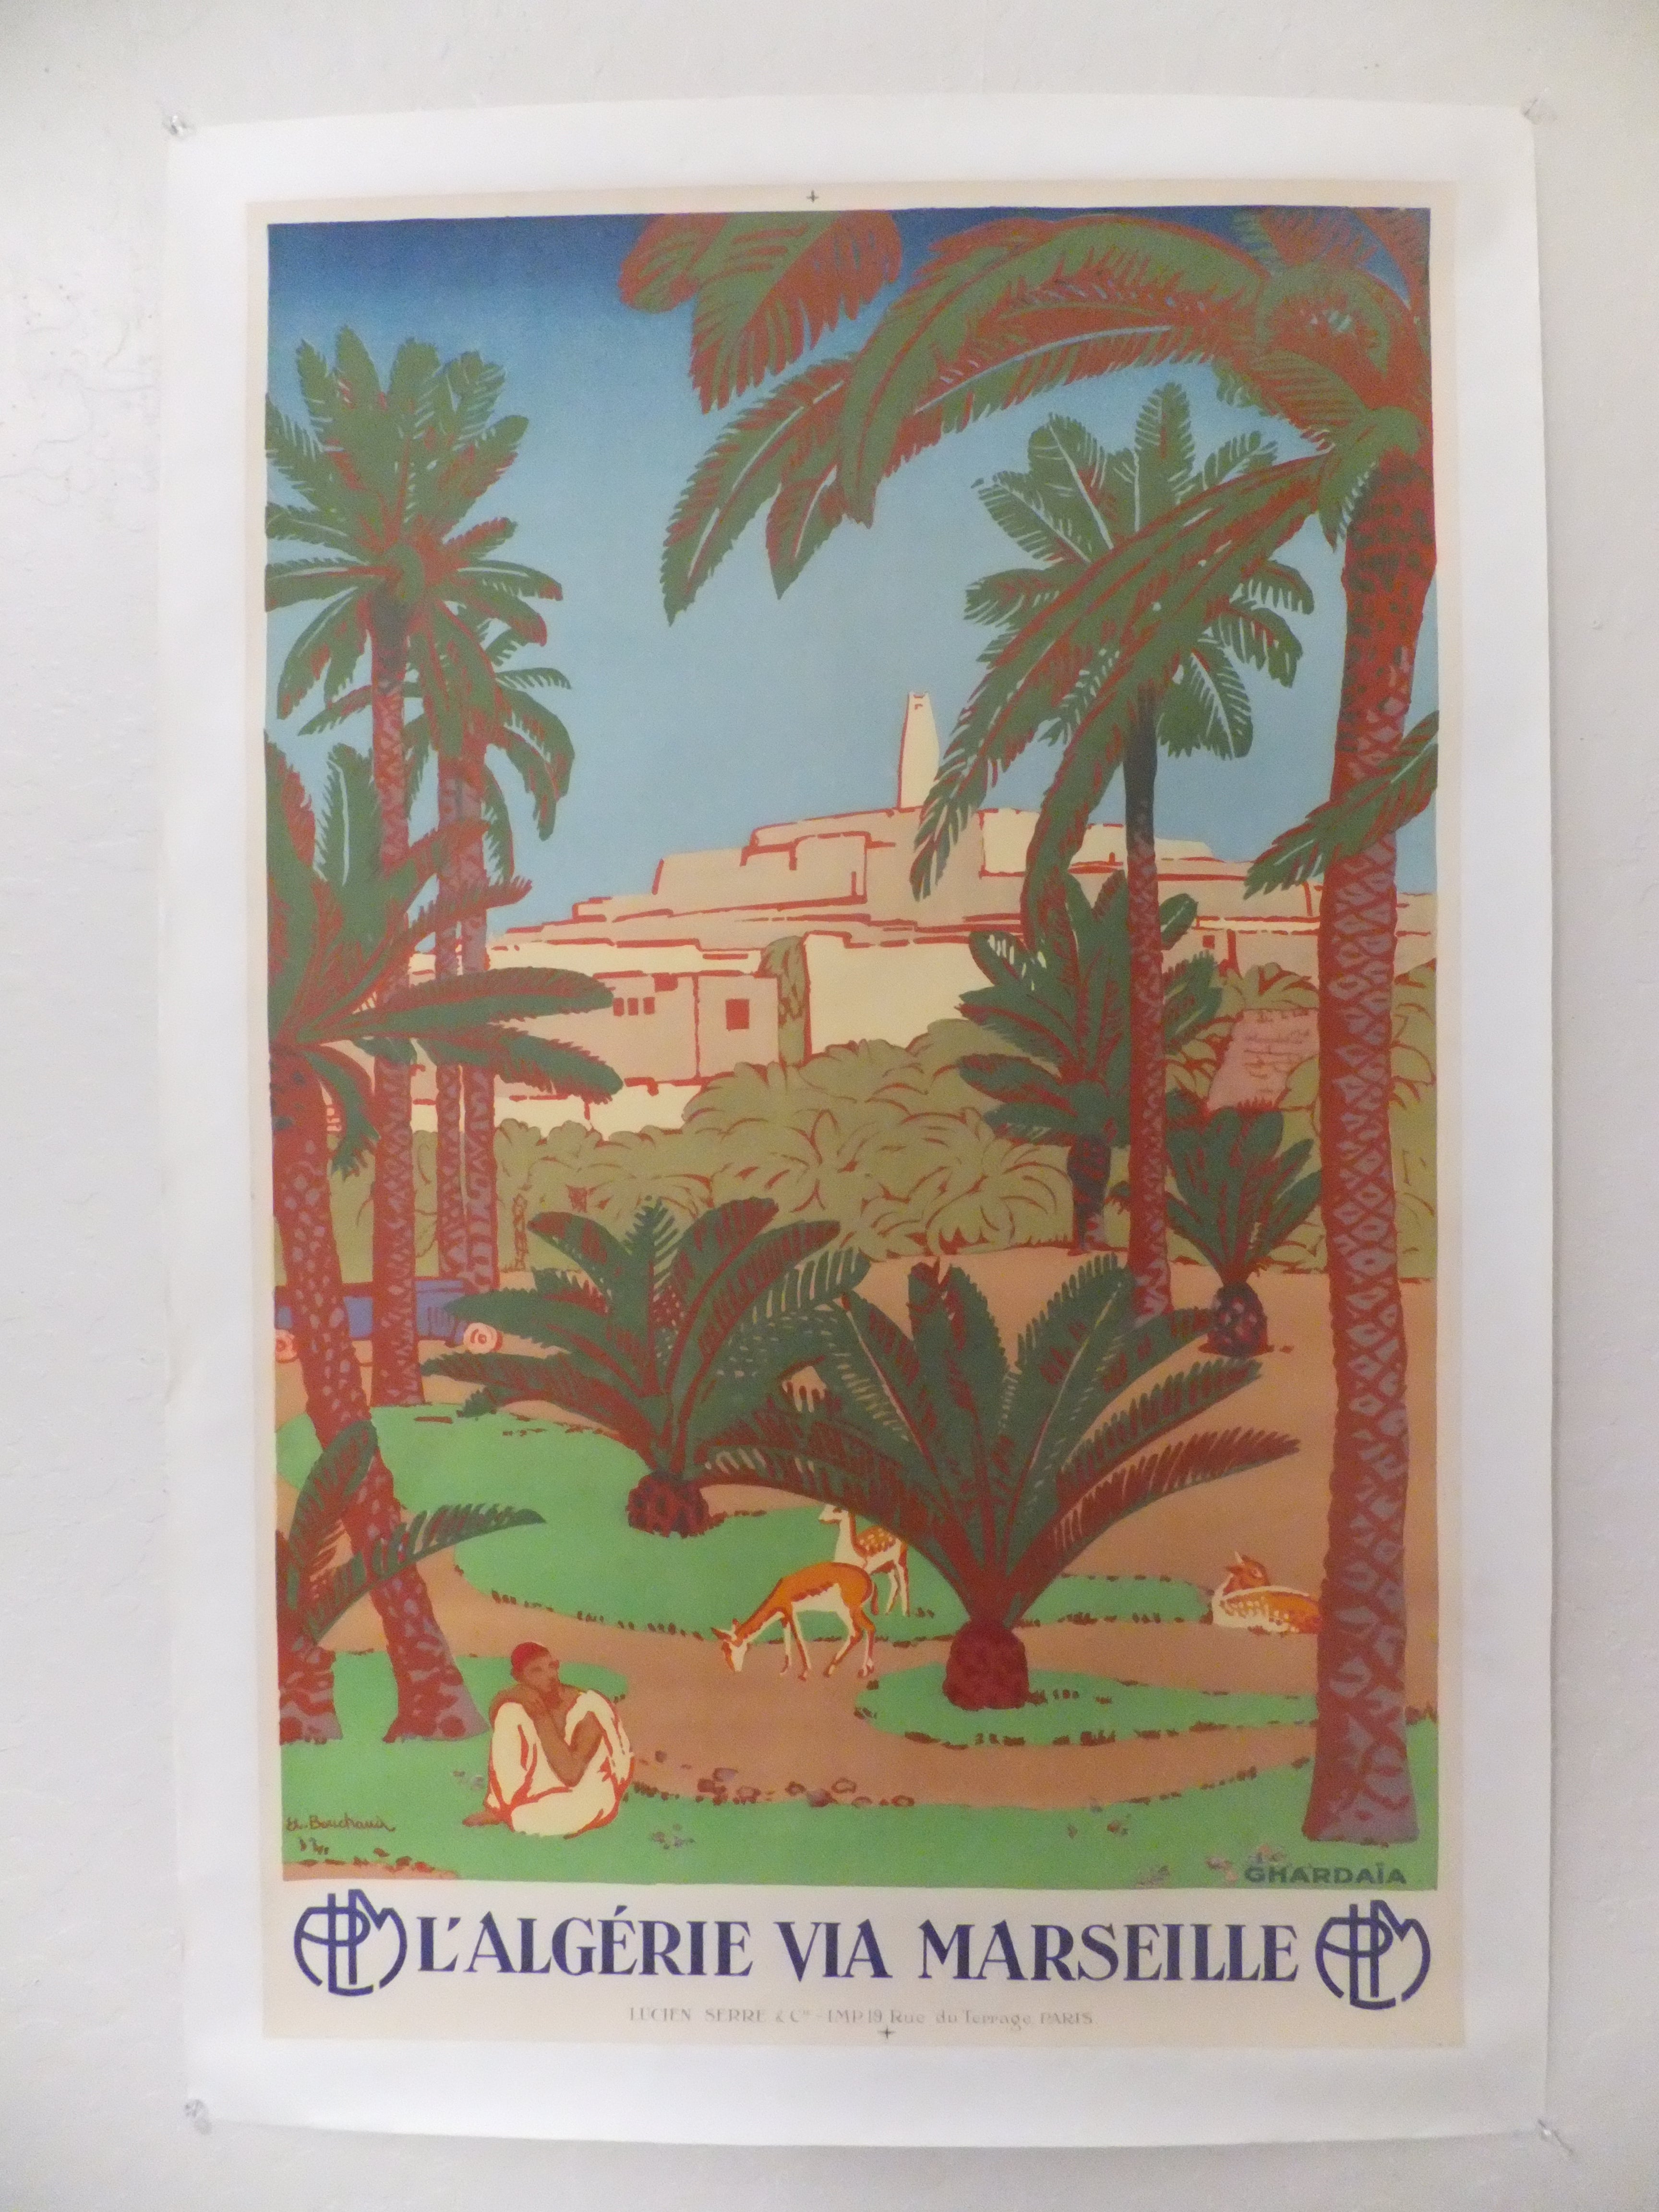 Vintage Travel Poster for Algeria For Sale